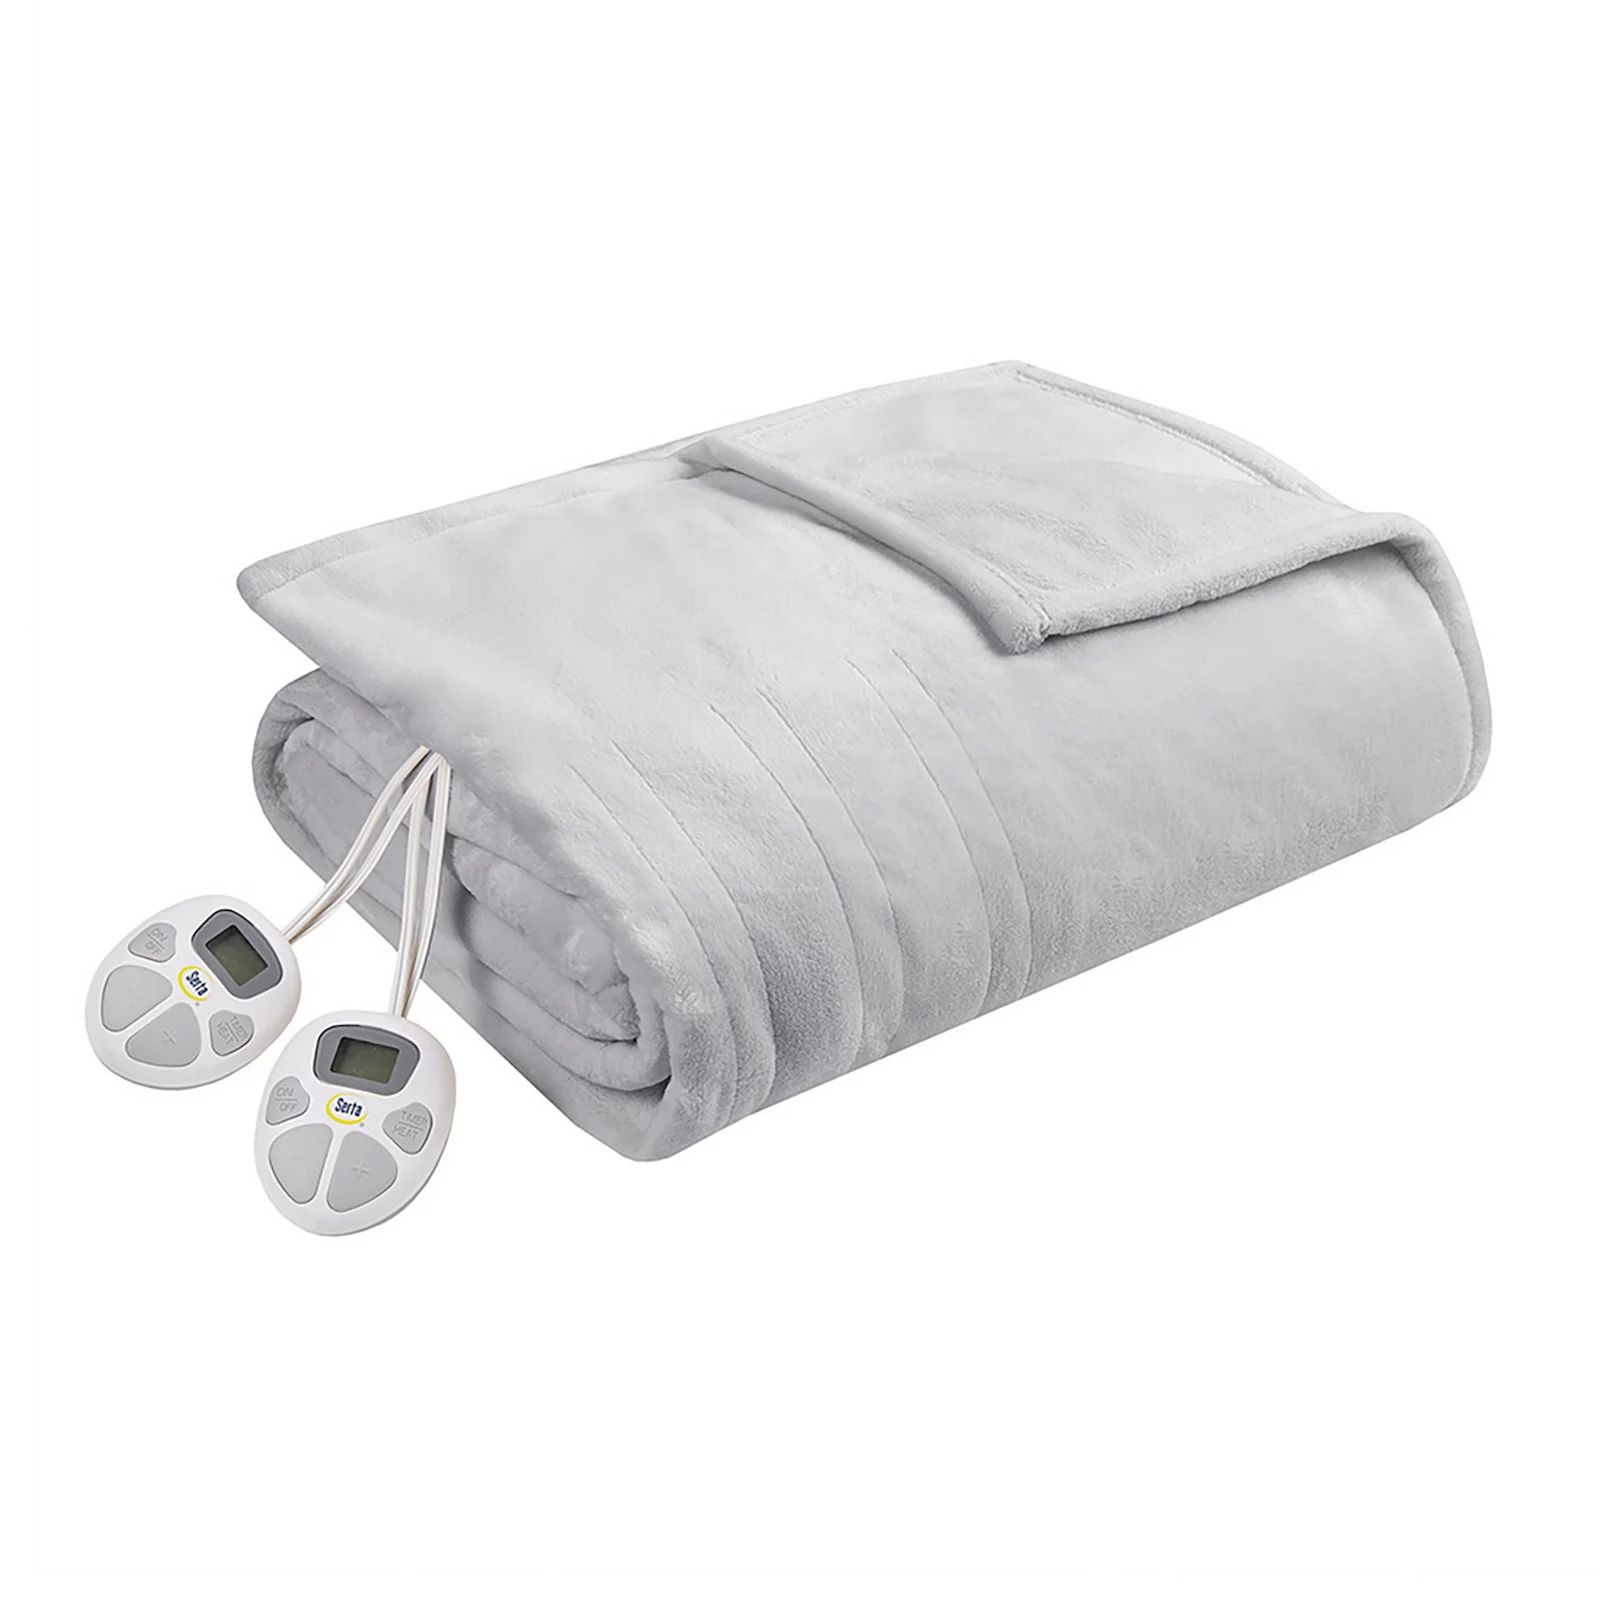 Serta Plush Heated Blanket, Light Grey, Full | Kohl's